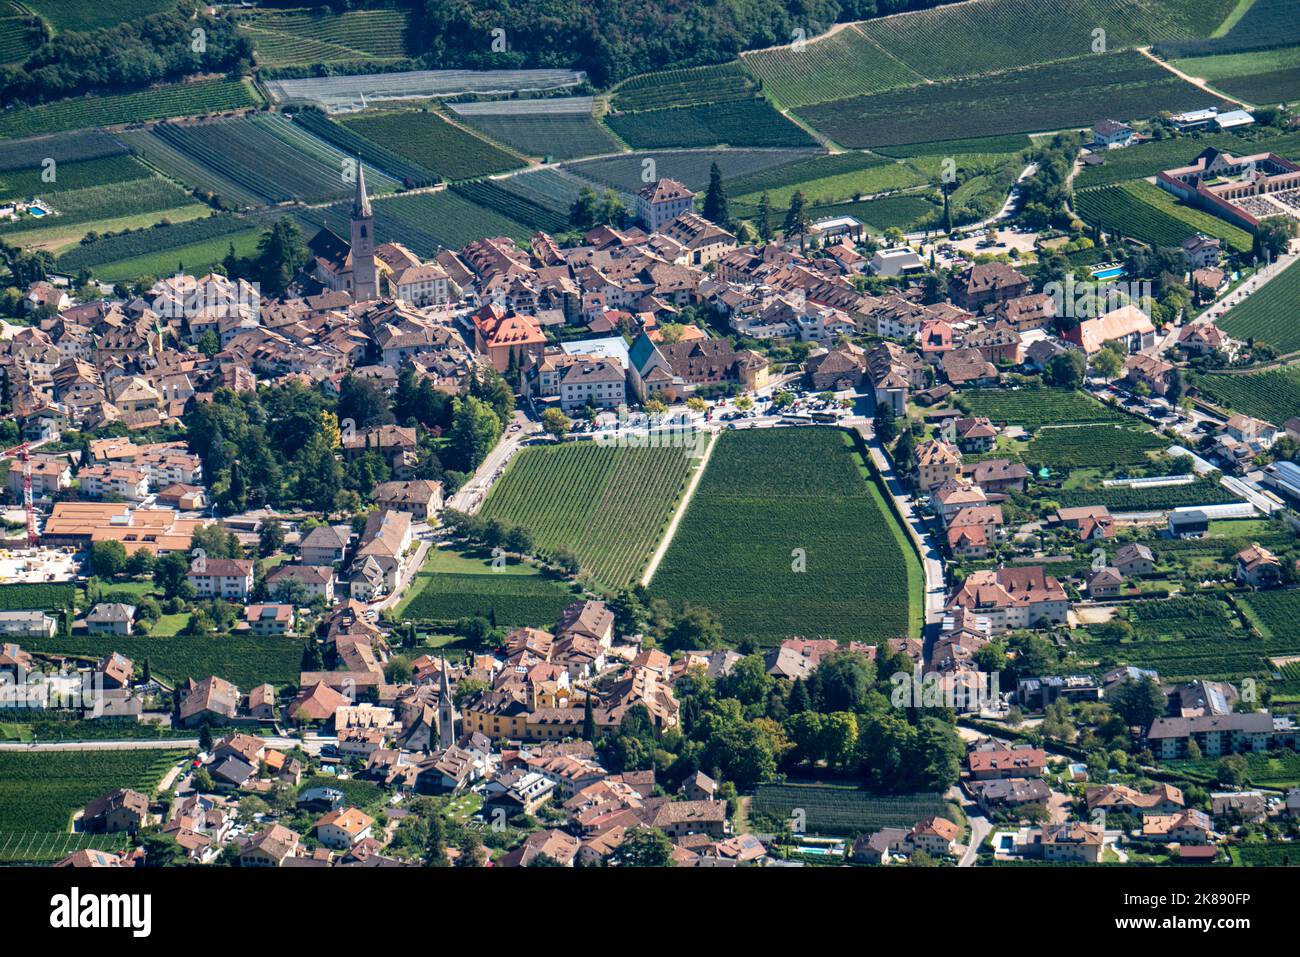 Le village de Kaltern, sur la route des vins du Tyrol du Sud, entouré de vignobles et de vergers de pommiers, Etschtal, Italie Banque D'Images